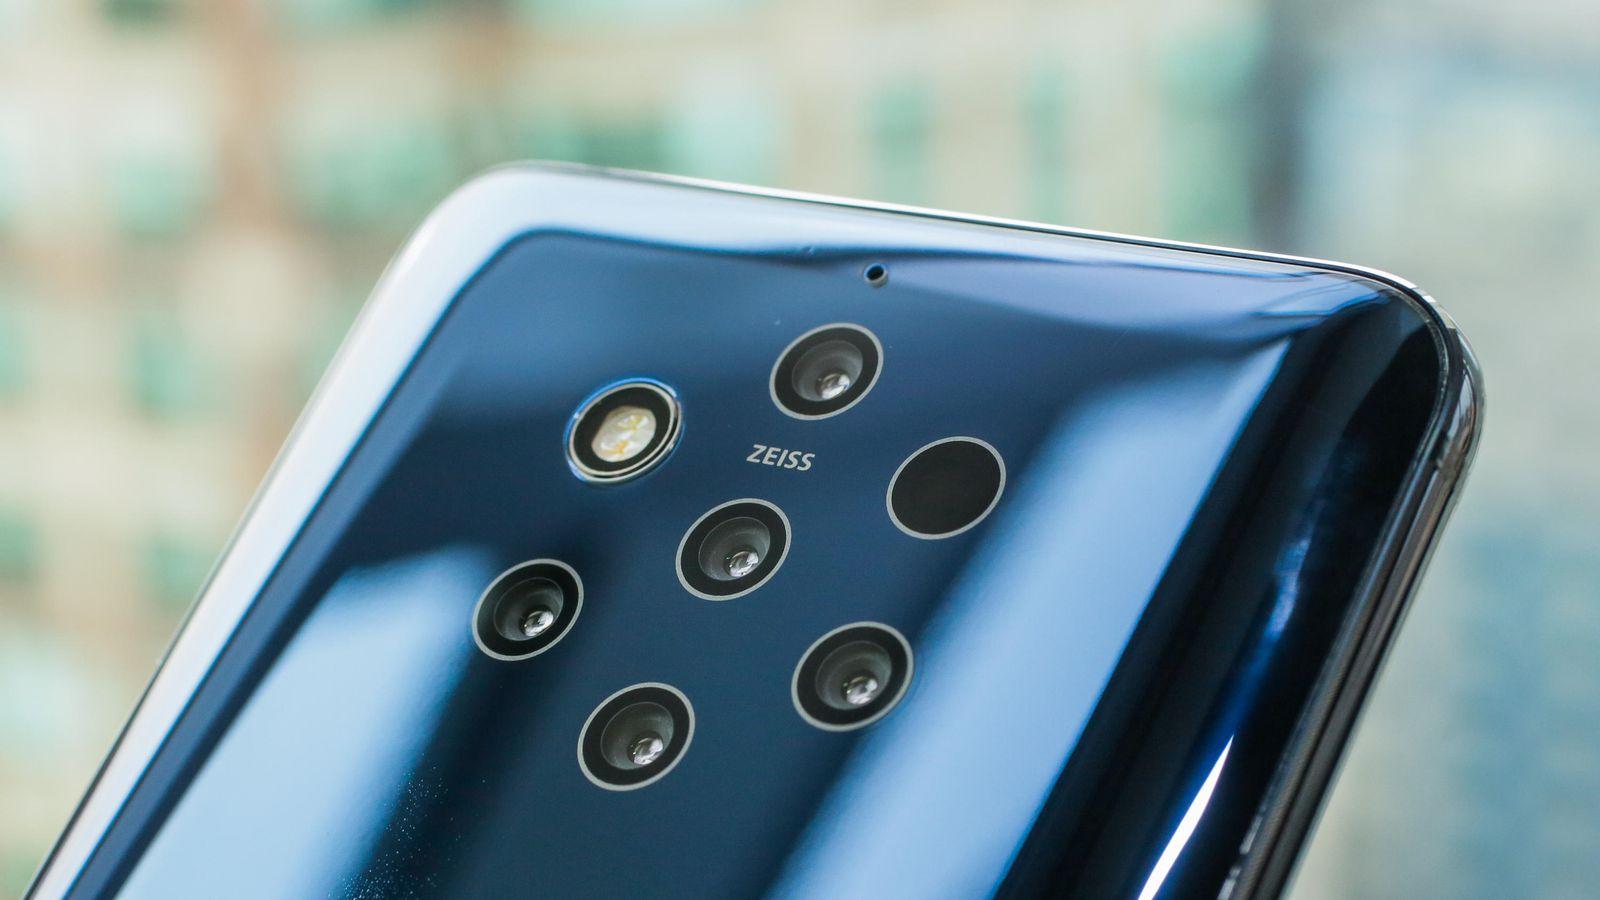 Nokia PureView — новый уровень мобильной фотографии. Что скрывается за 6-ю камерами?